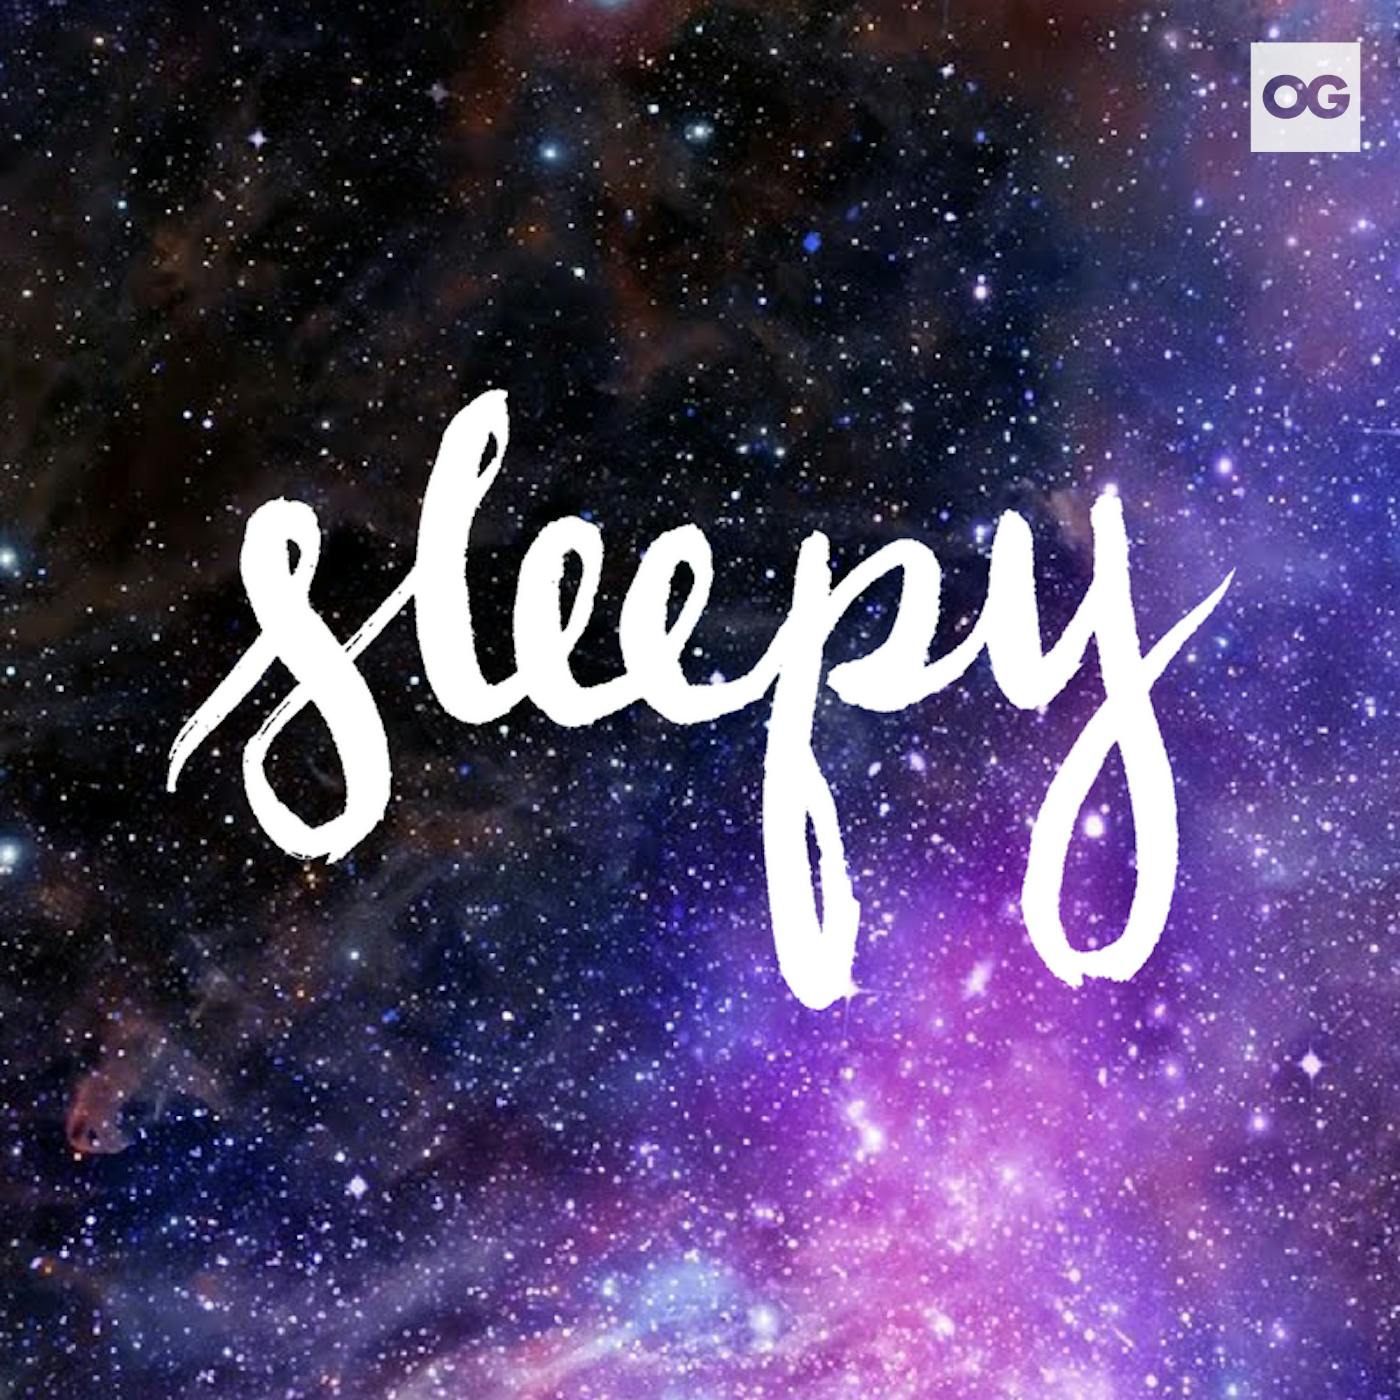 88 – Sleeping Beauty